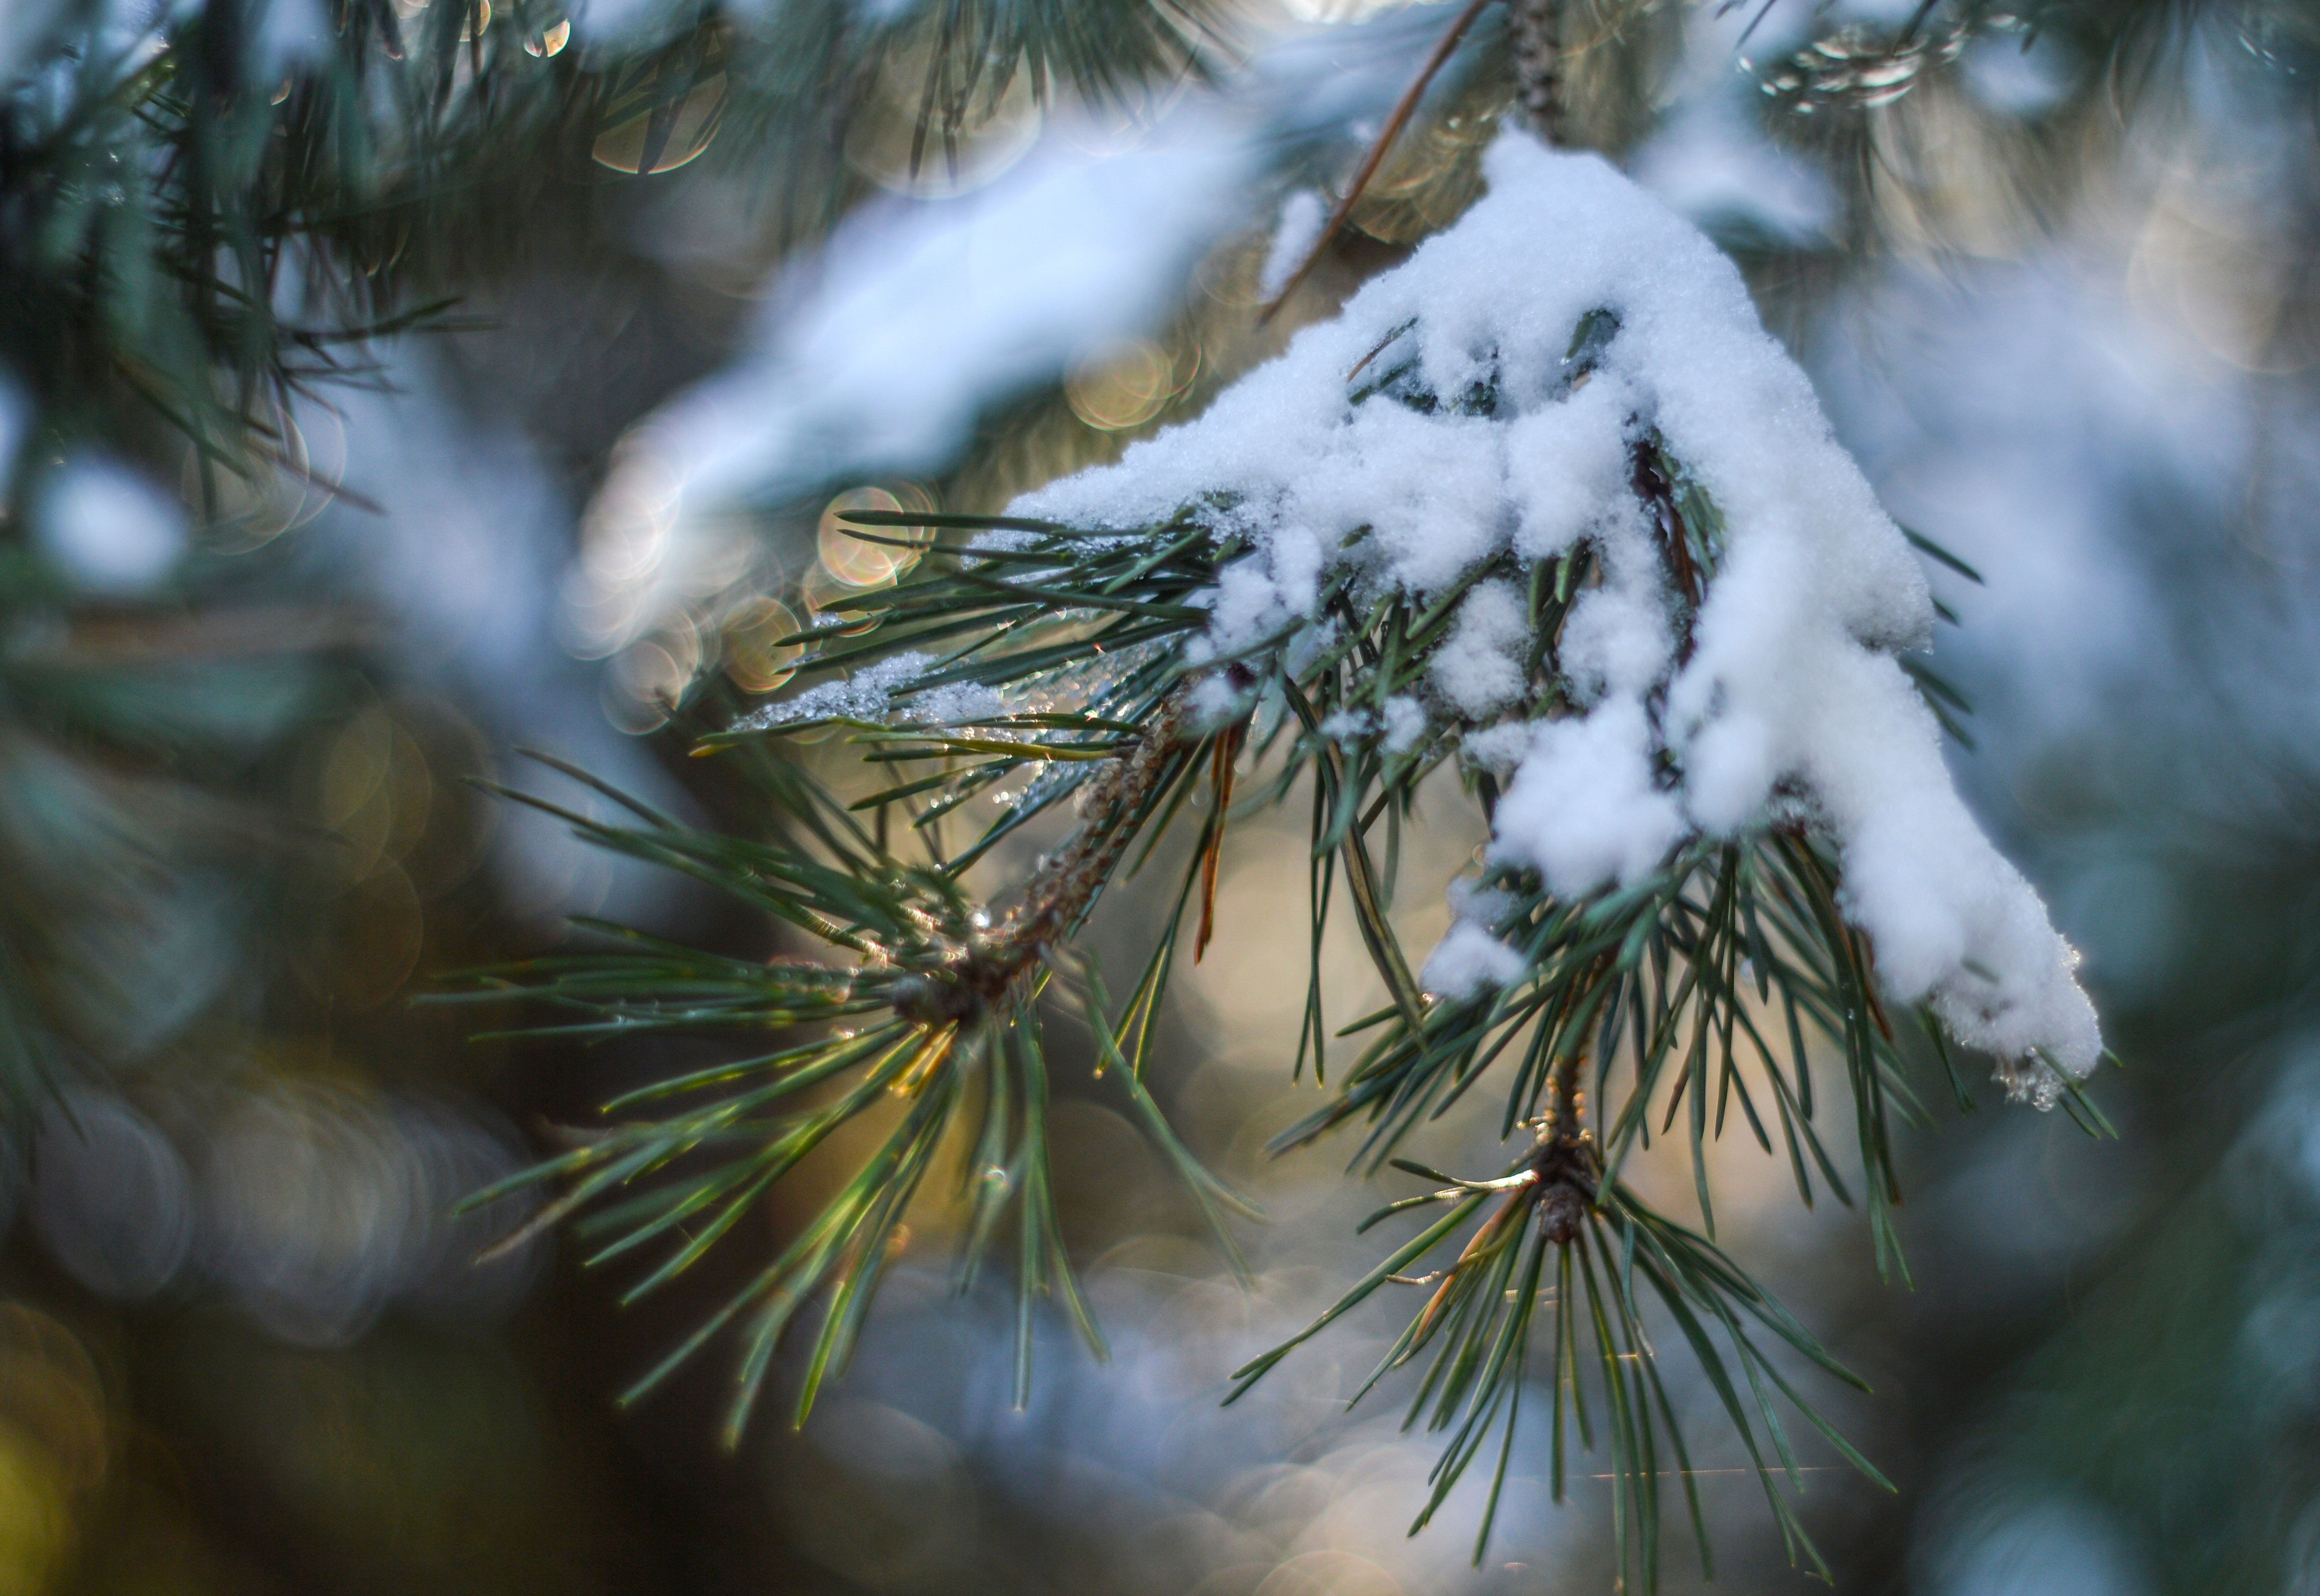 Хвойные под снегом. Хвойные деревья в снегу. Сосновые ветки в снегу. Хвоя сосны зимой. Заснеженные ветки сосны.